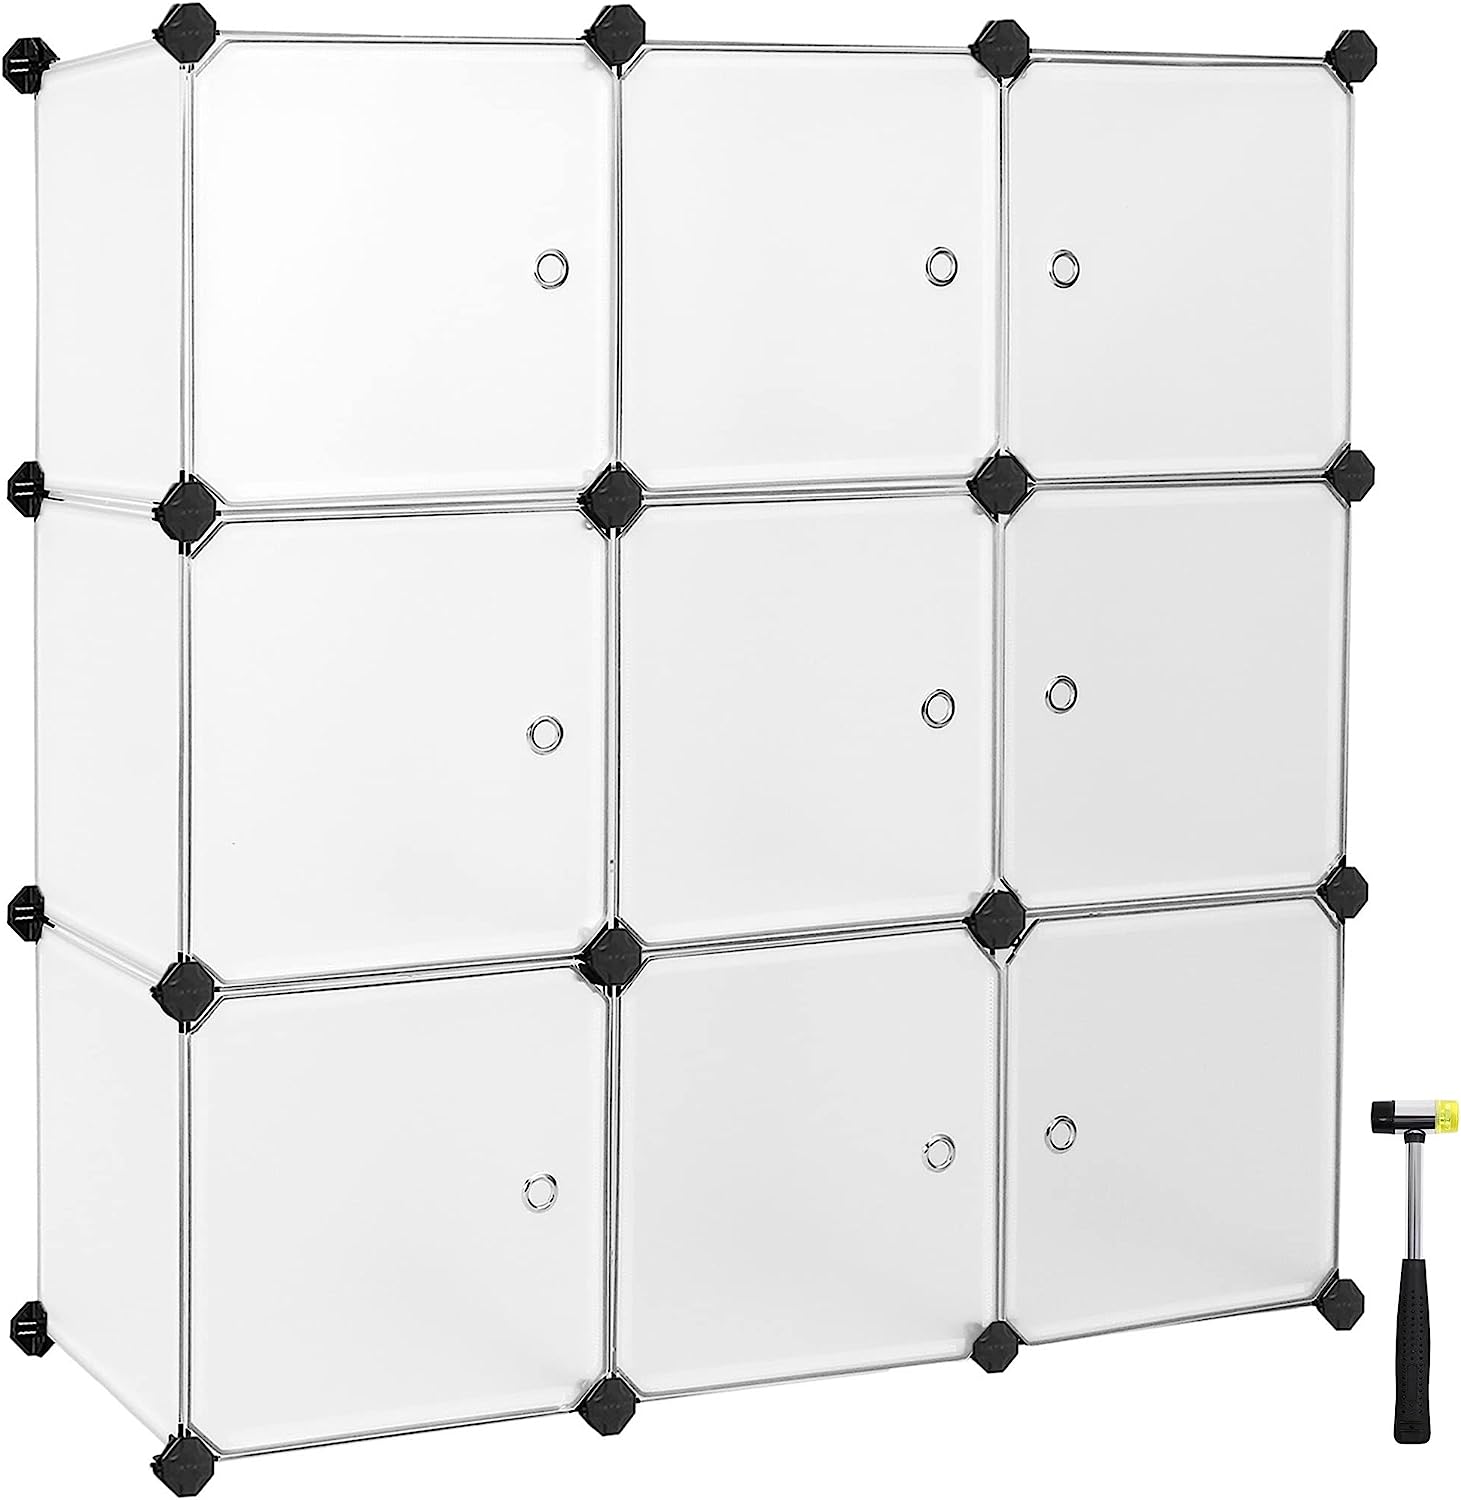 Armario organizador de nueve cubos con puertas modular de plástico color  negro Songmics